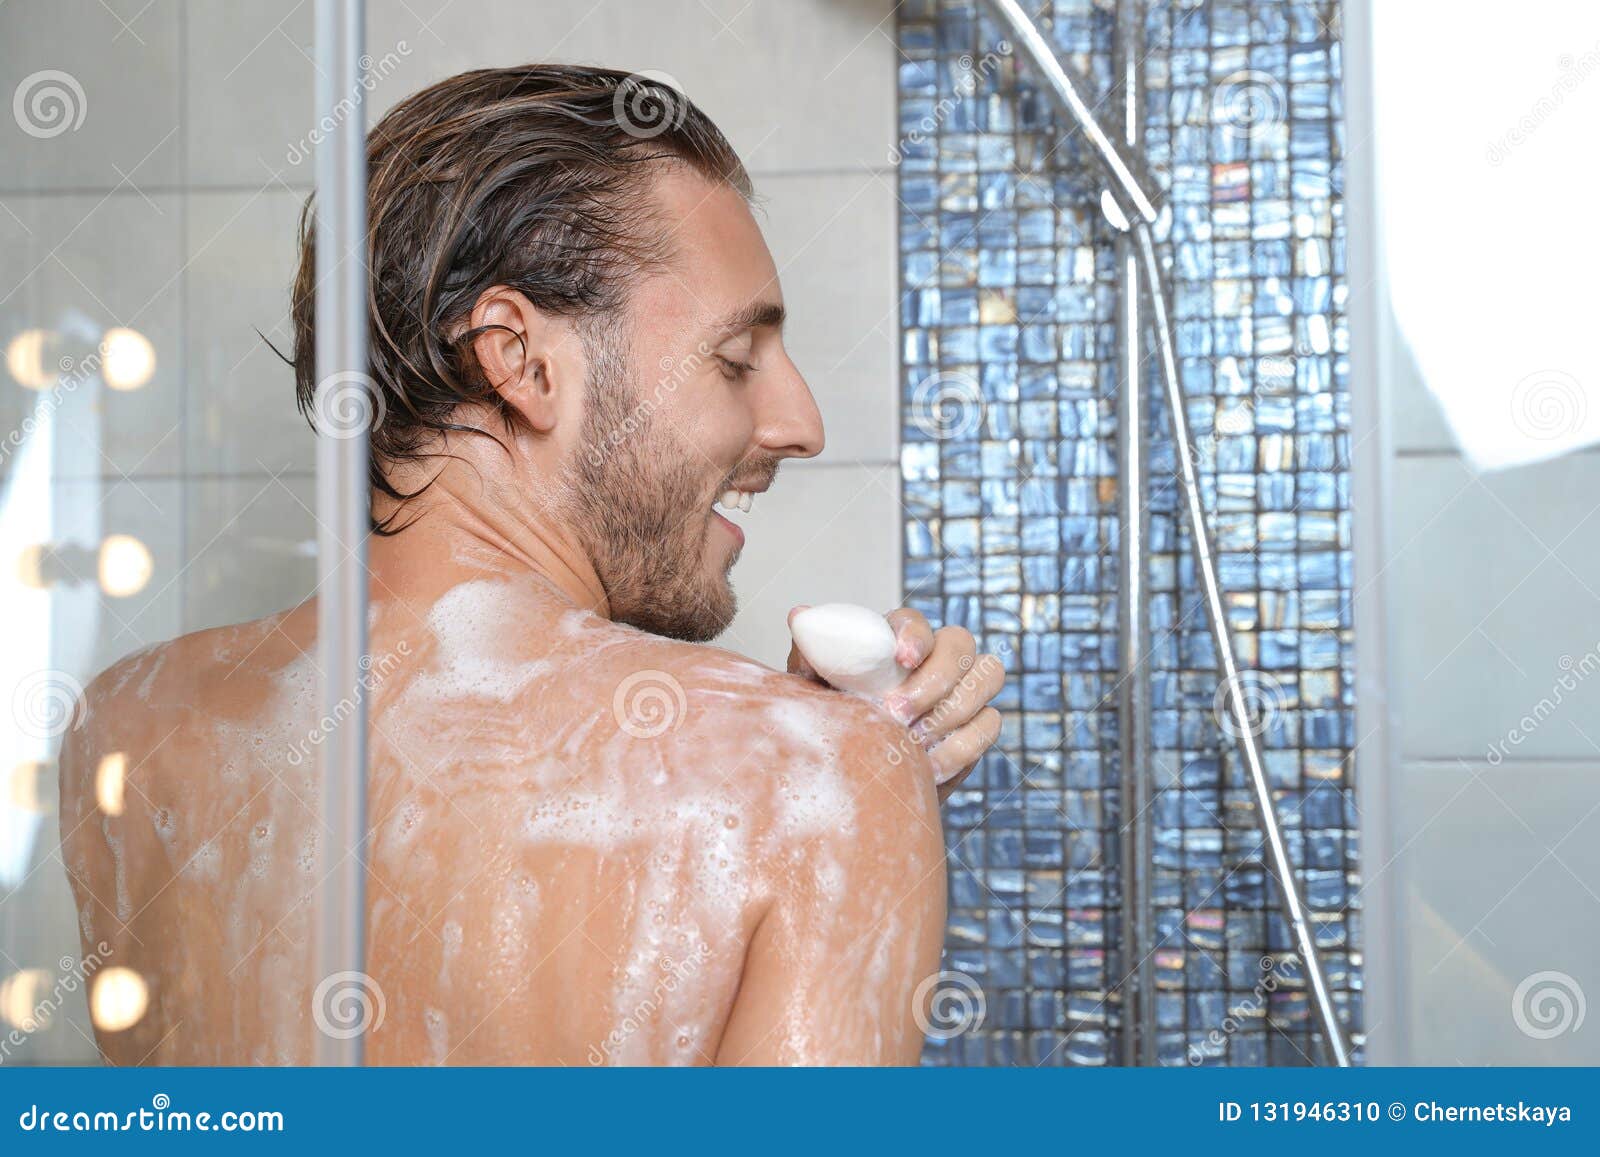 selfie shower bath soap pics